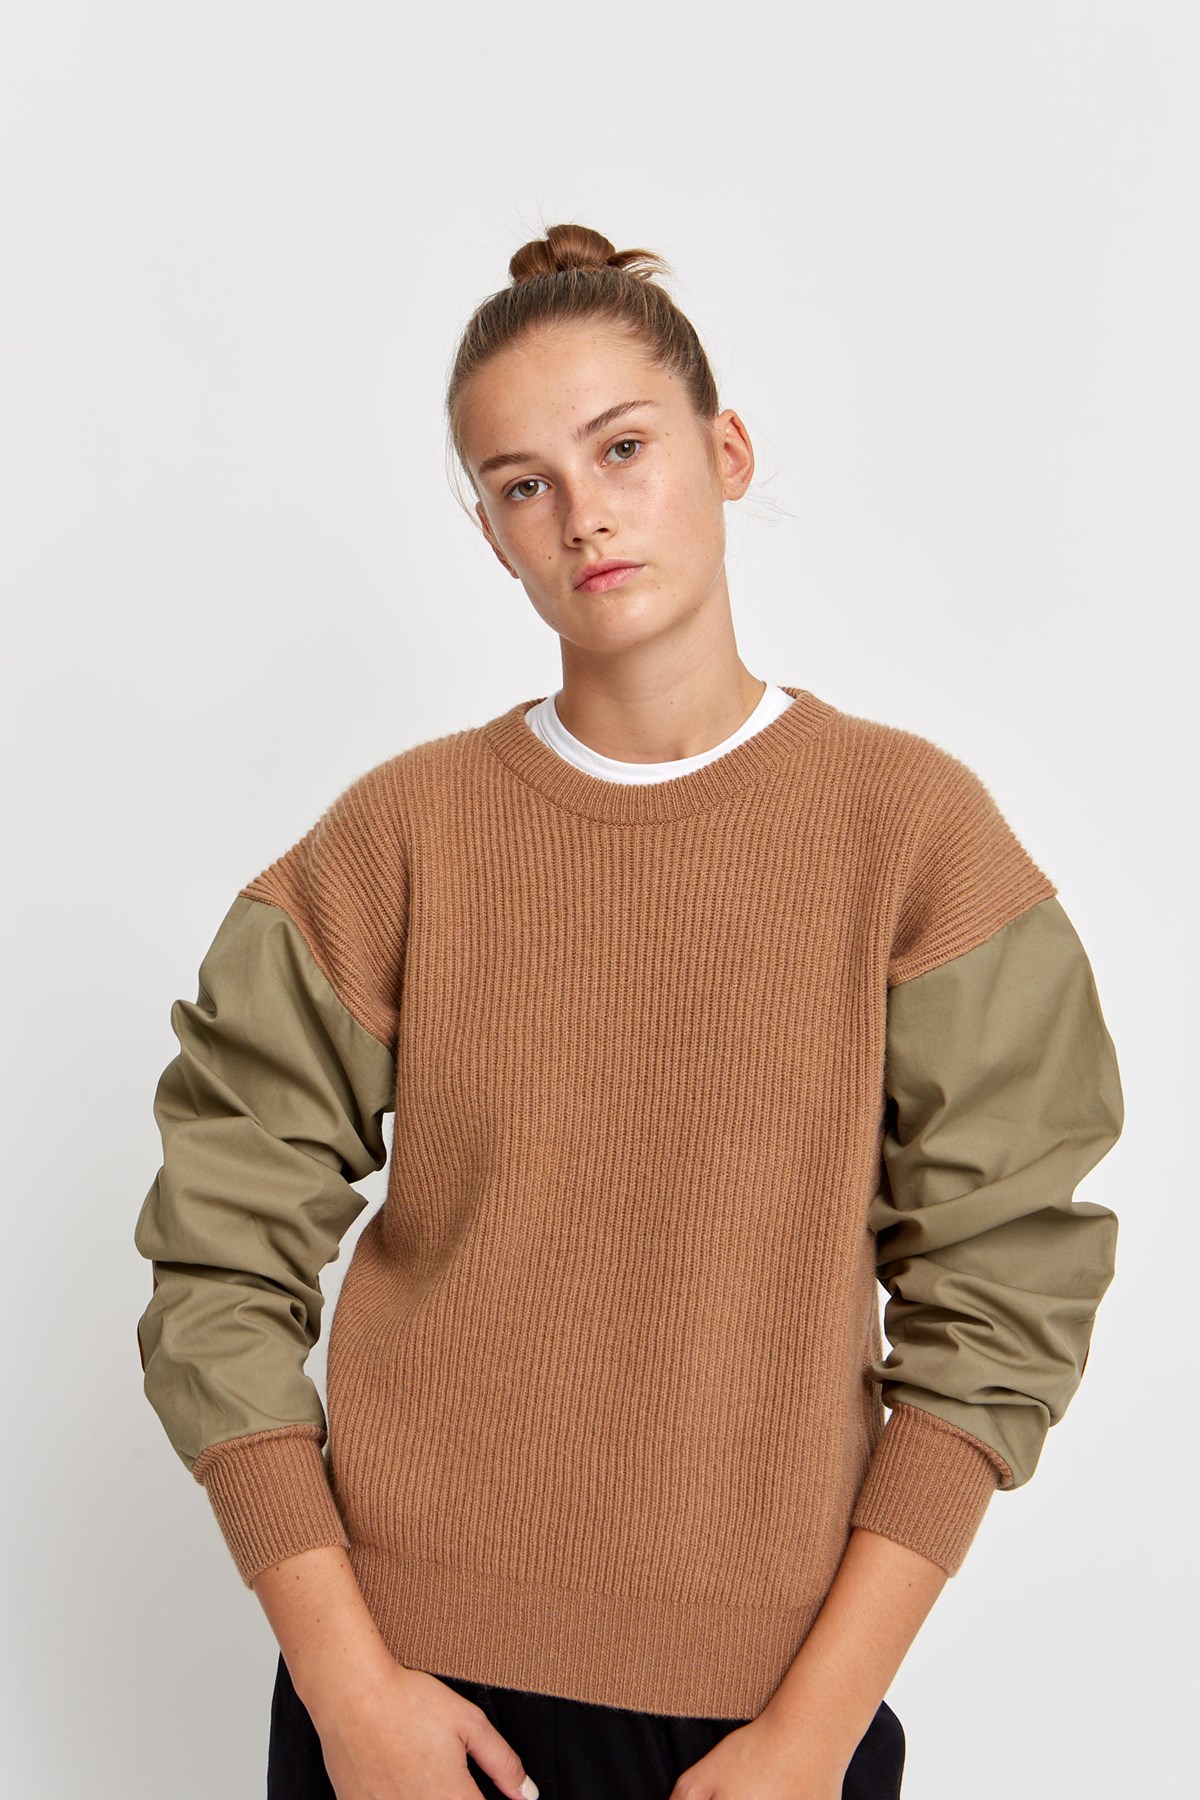 Leather knitwear & sweatshirt